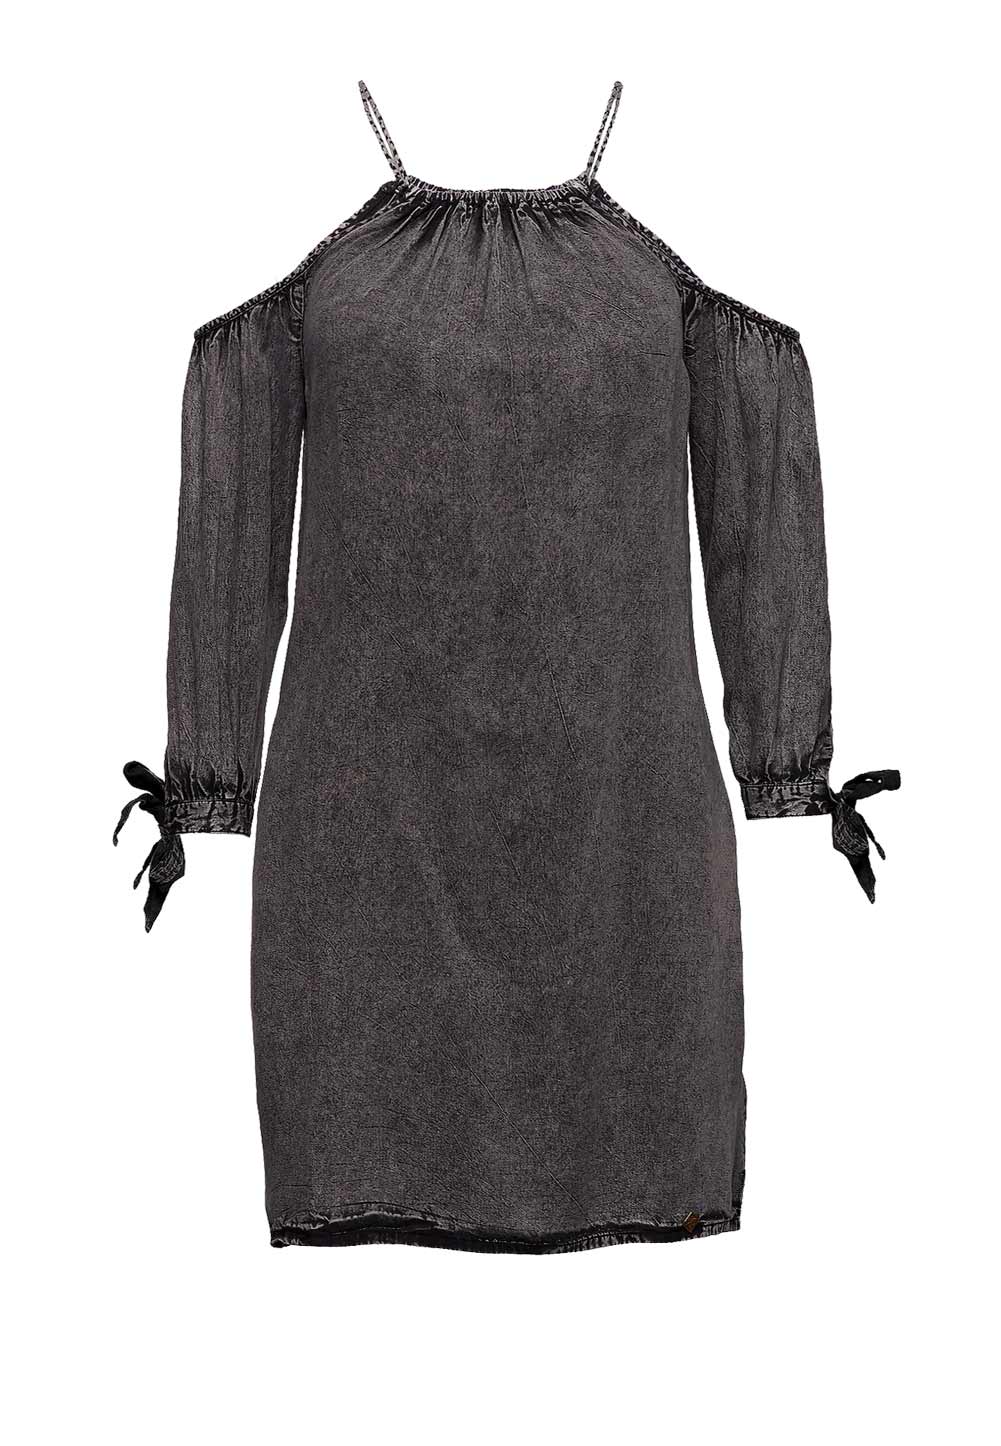 SUPERDRY Damen Marken-Kleid, schwarz